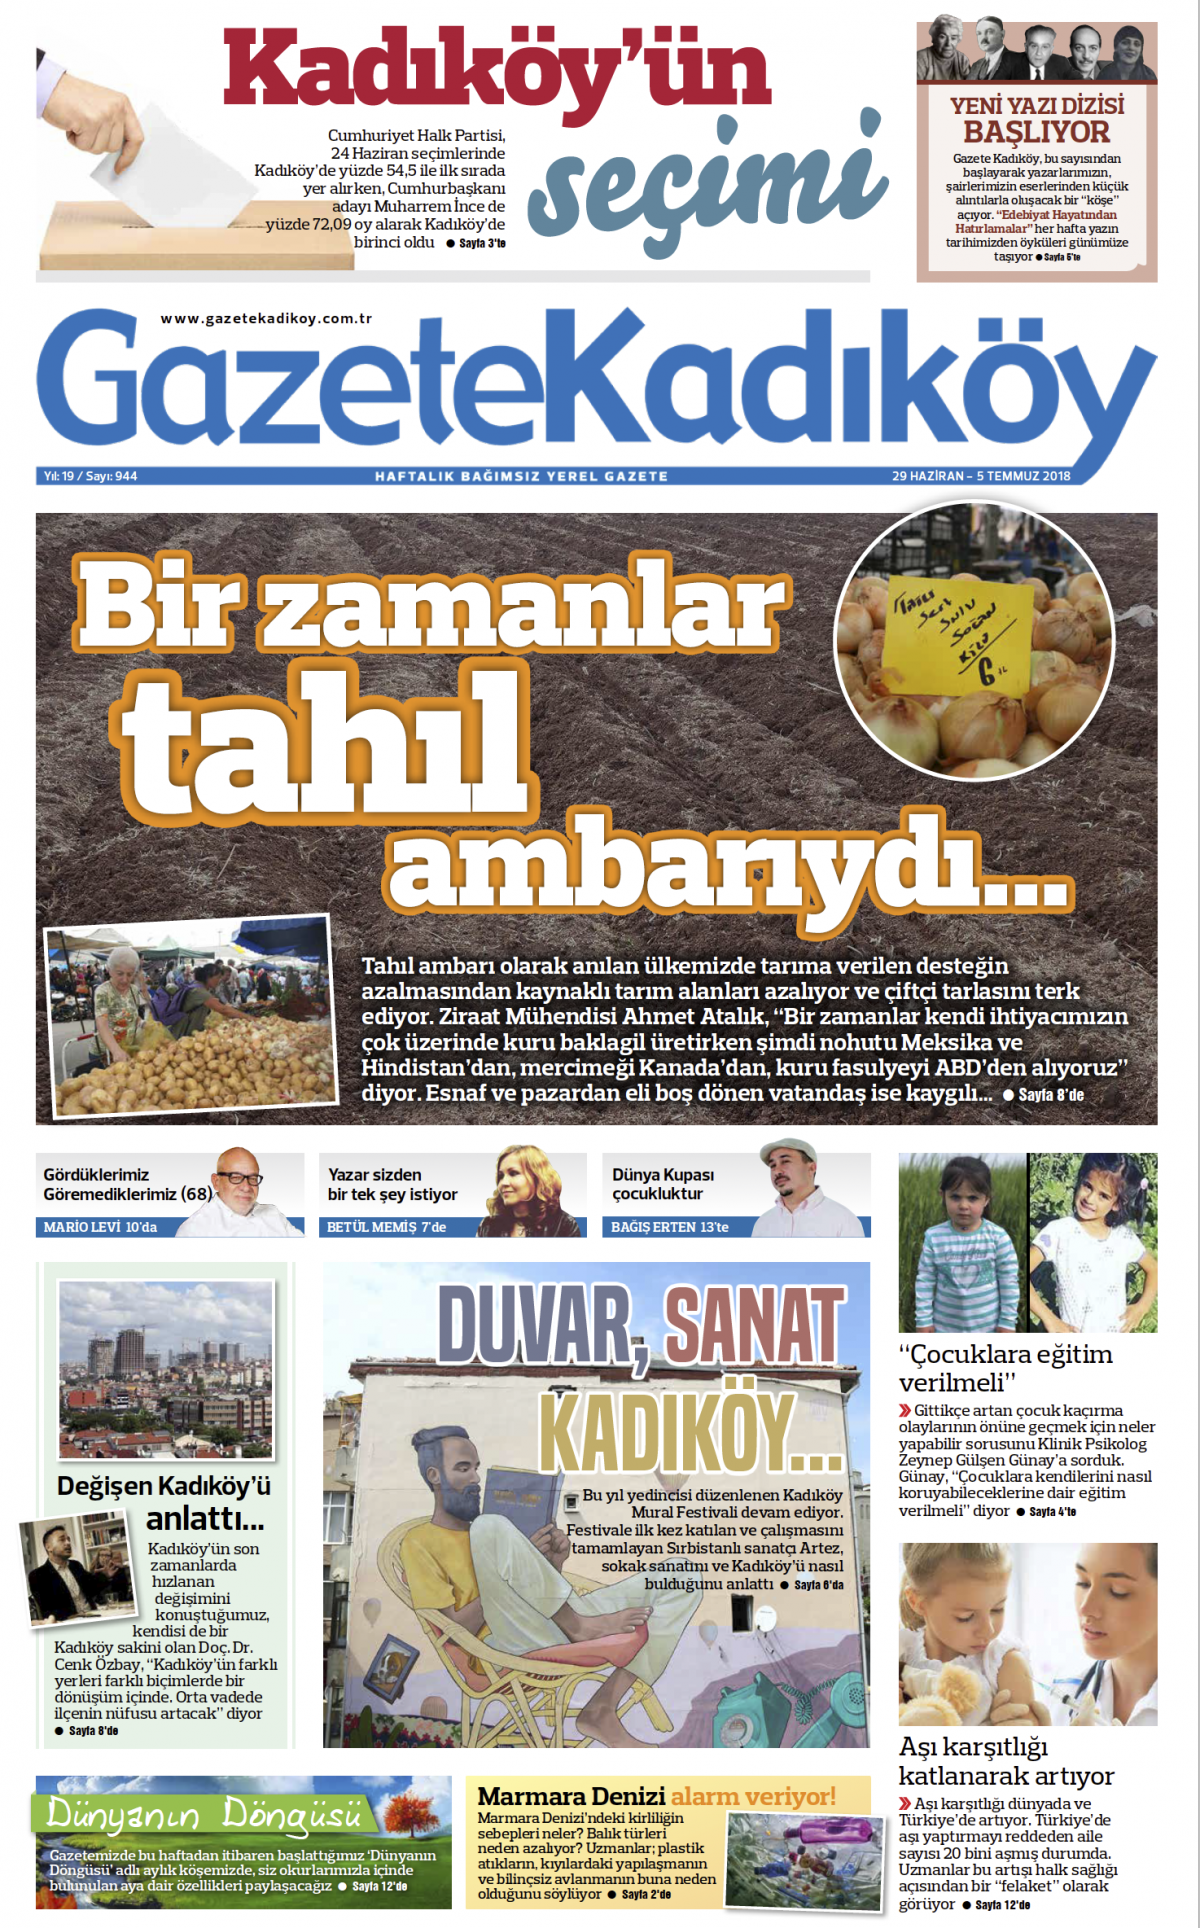 Gazete Kadıköy - 944. SAYI